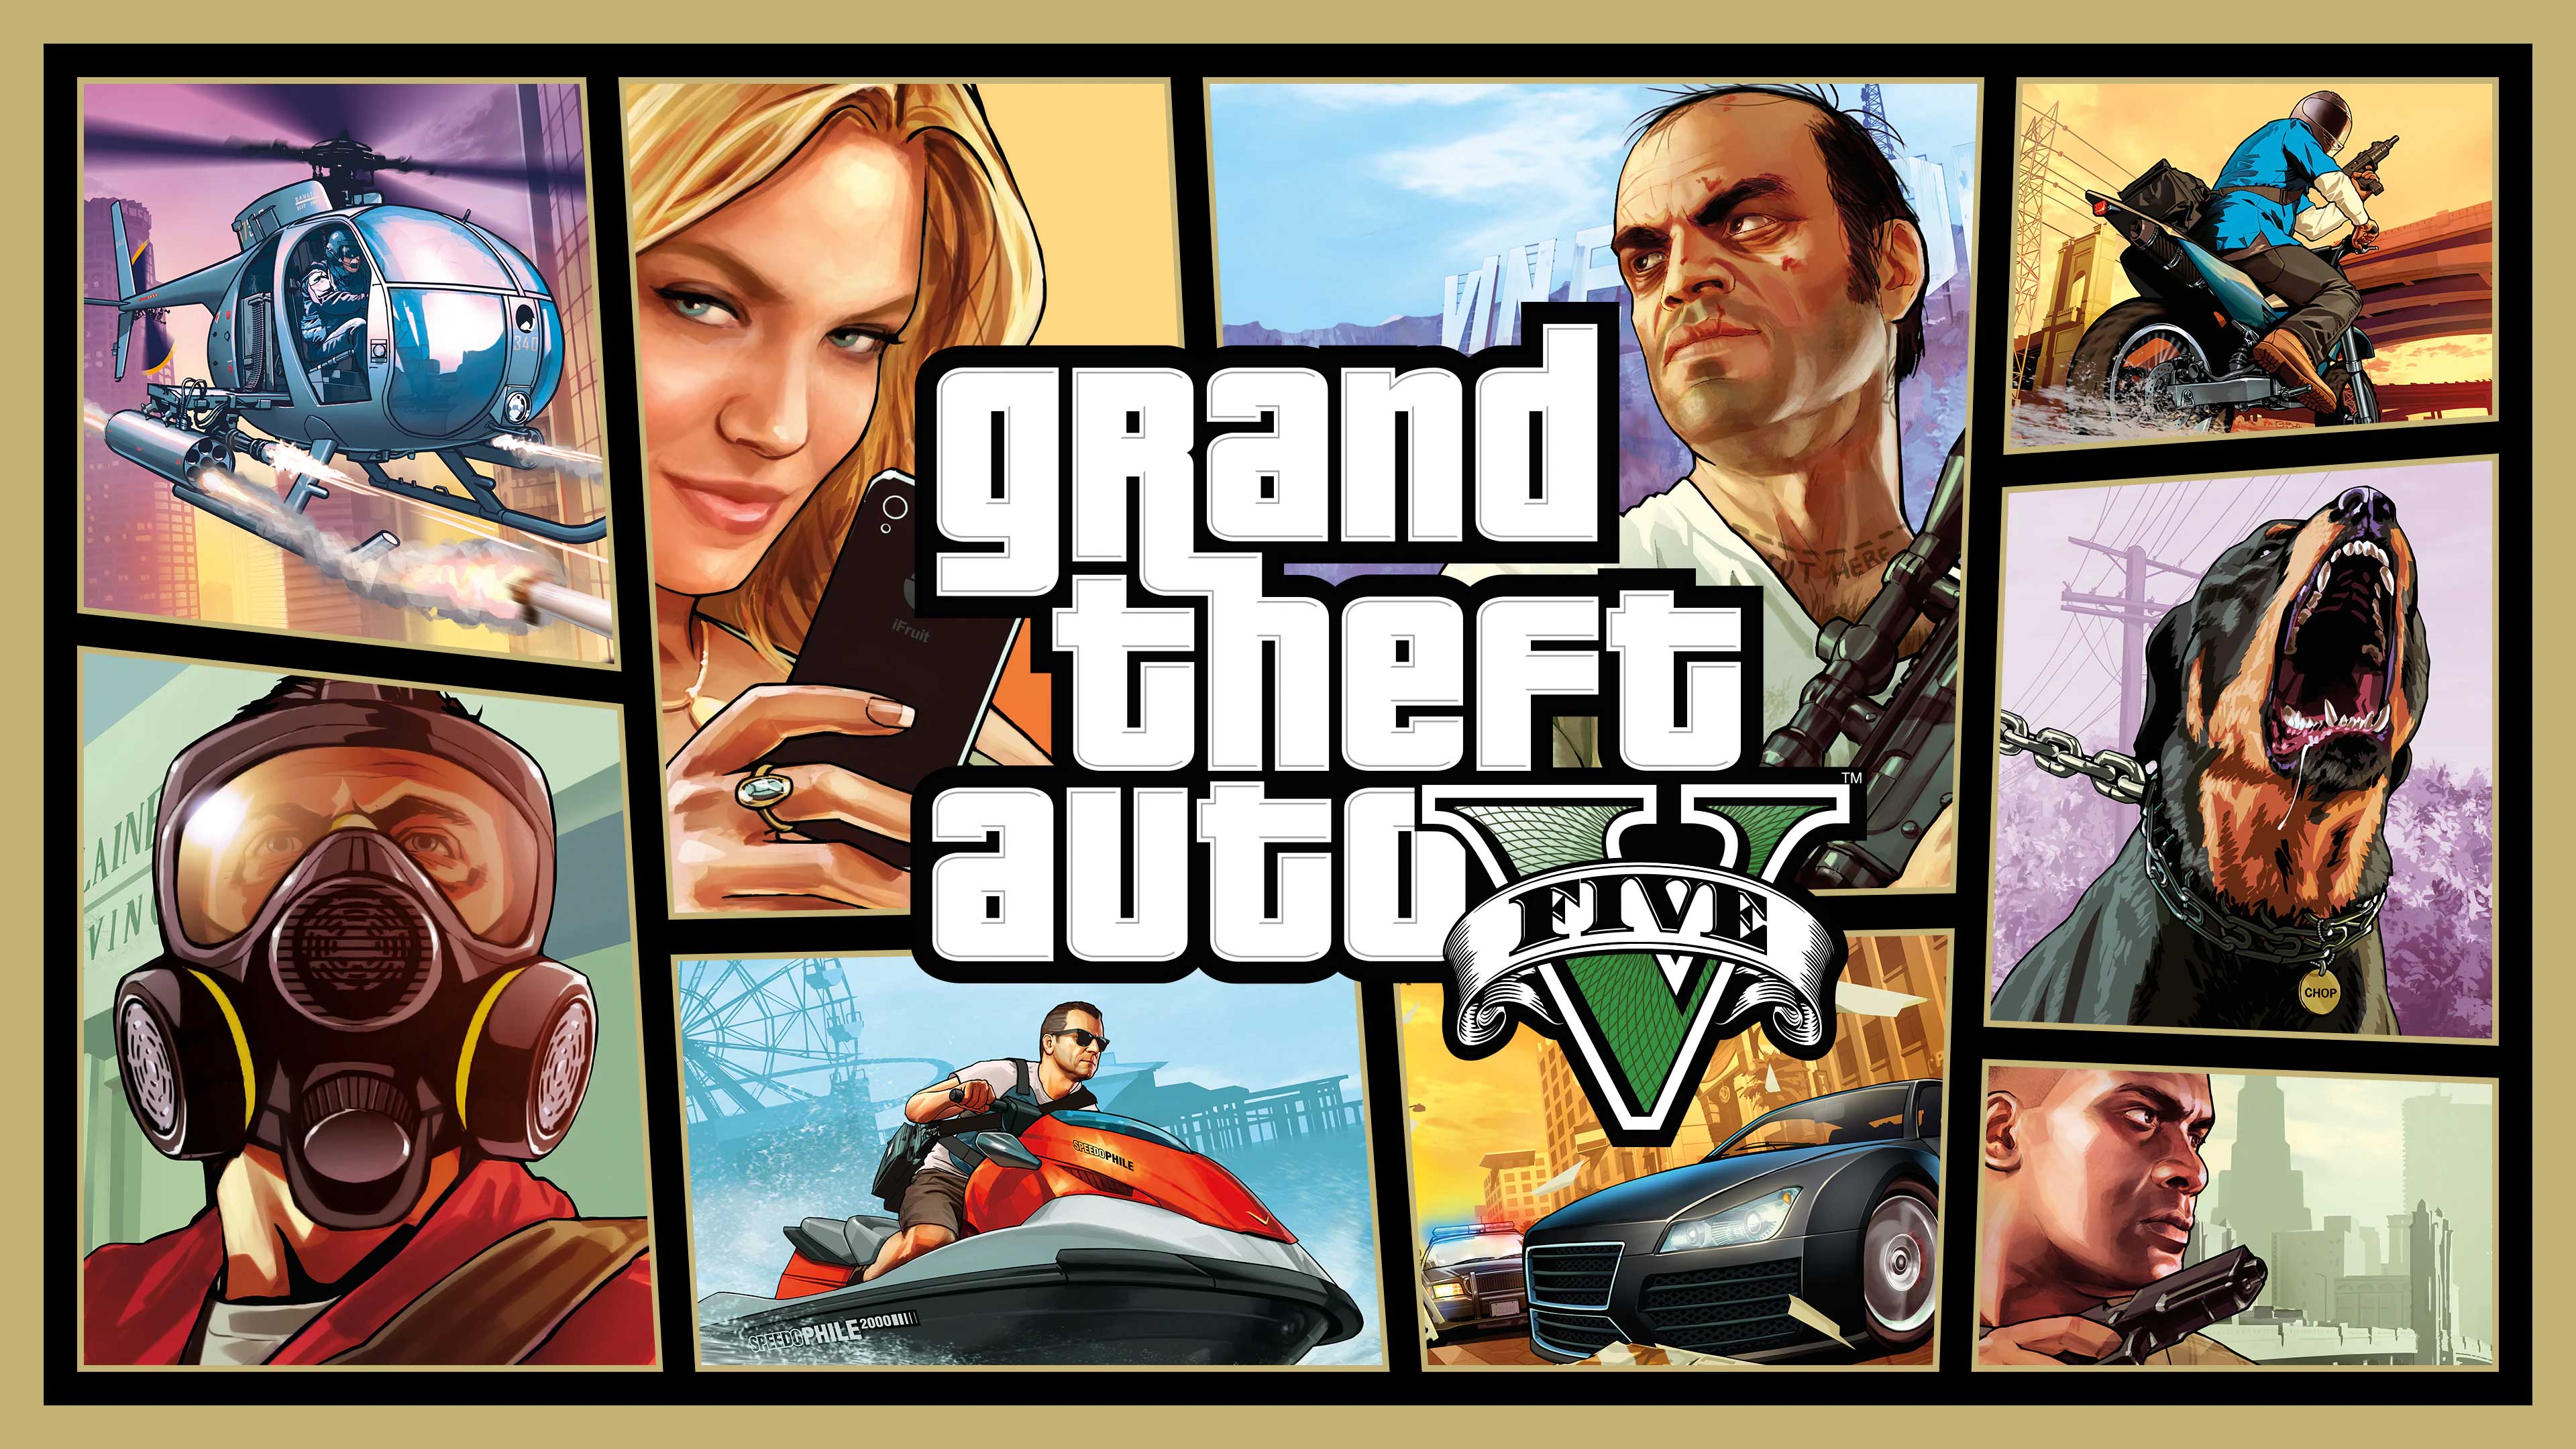 Grand Theft Auto V, Issa Vibe Games, issavibegames.com